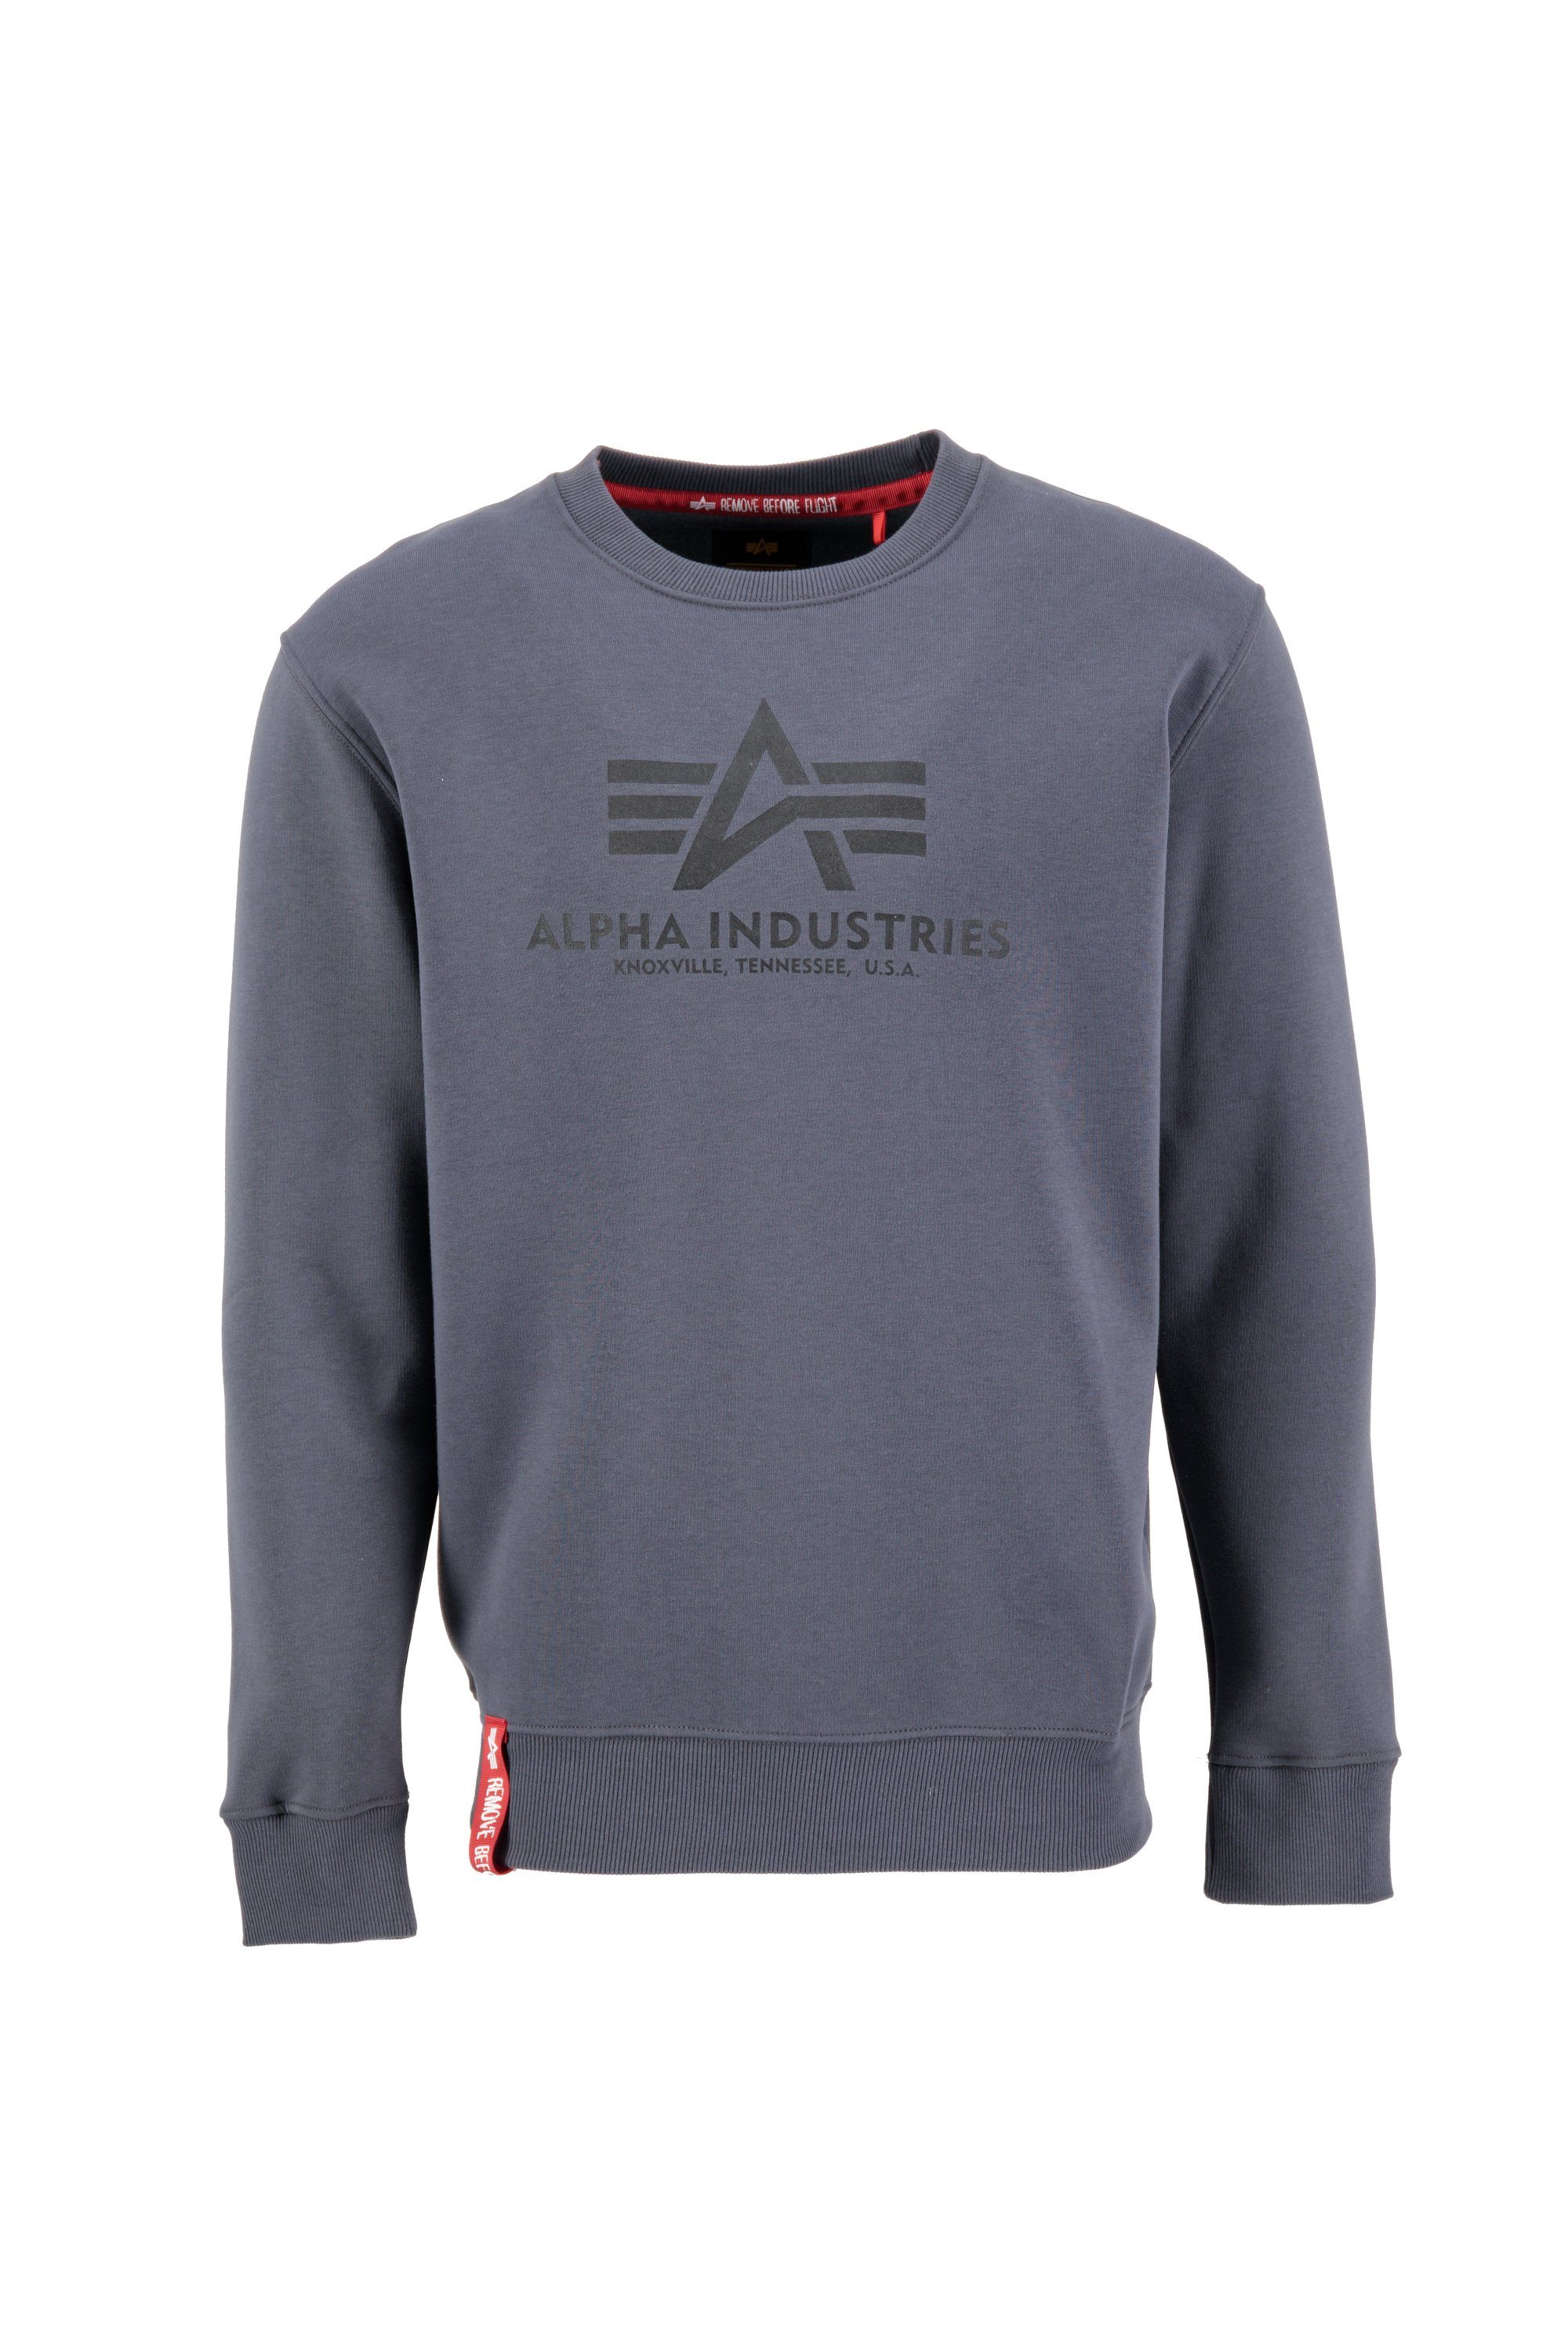 Absolut der günstigste Alpha Alpha Men greyblack/black Sweater Sweatshirts - Industries Sweater Basic Industries